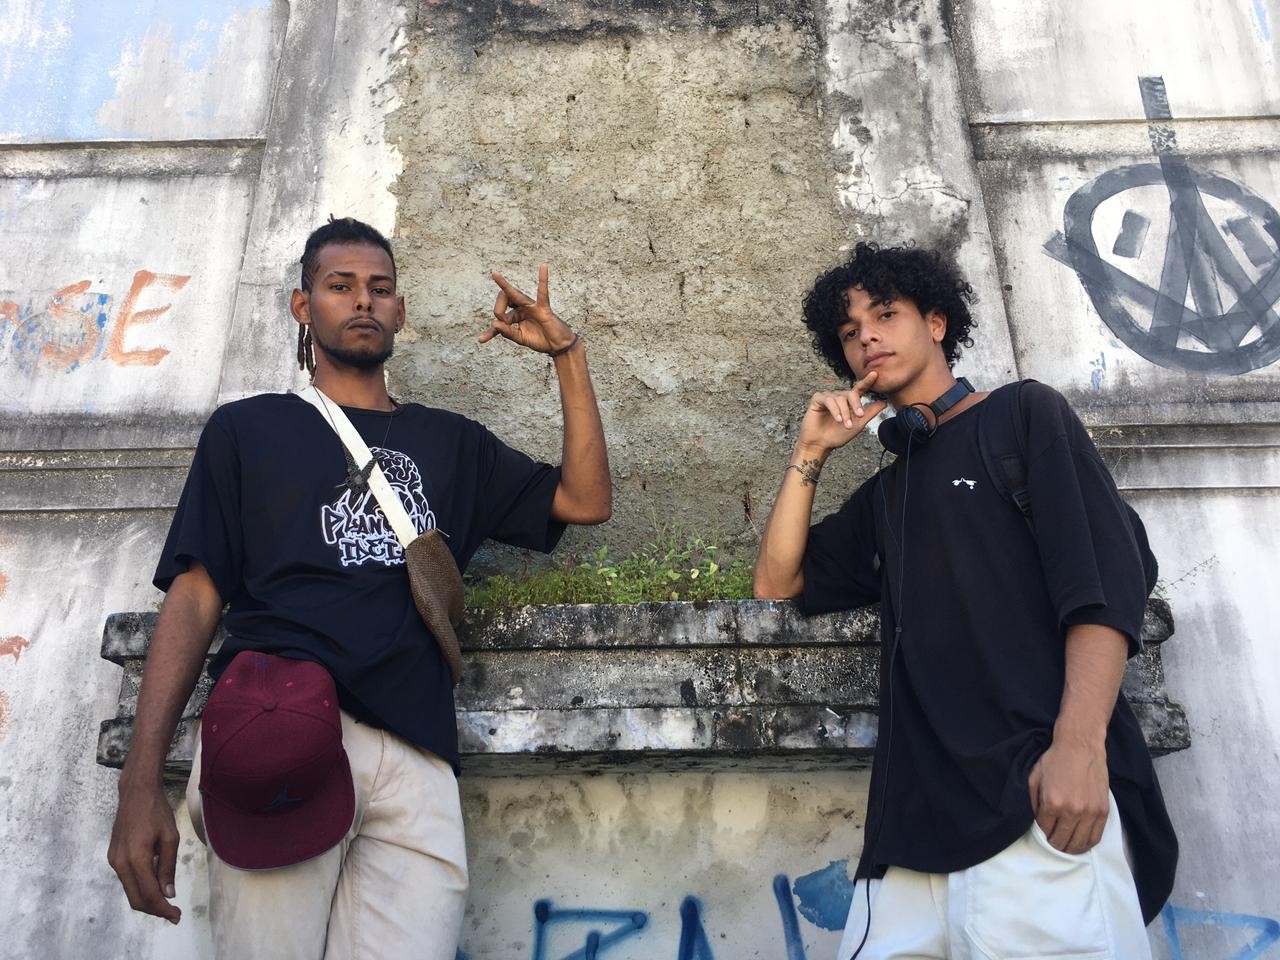 Para divulgar seu trabalho, dupla de rappers faz rimas nos ônibus de Maceió: 'Trilhando um sonho'